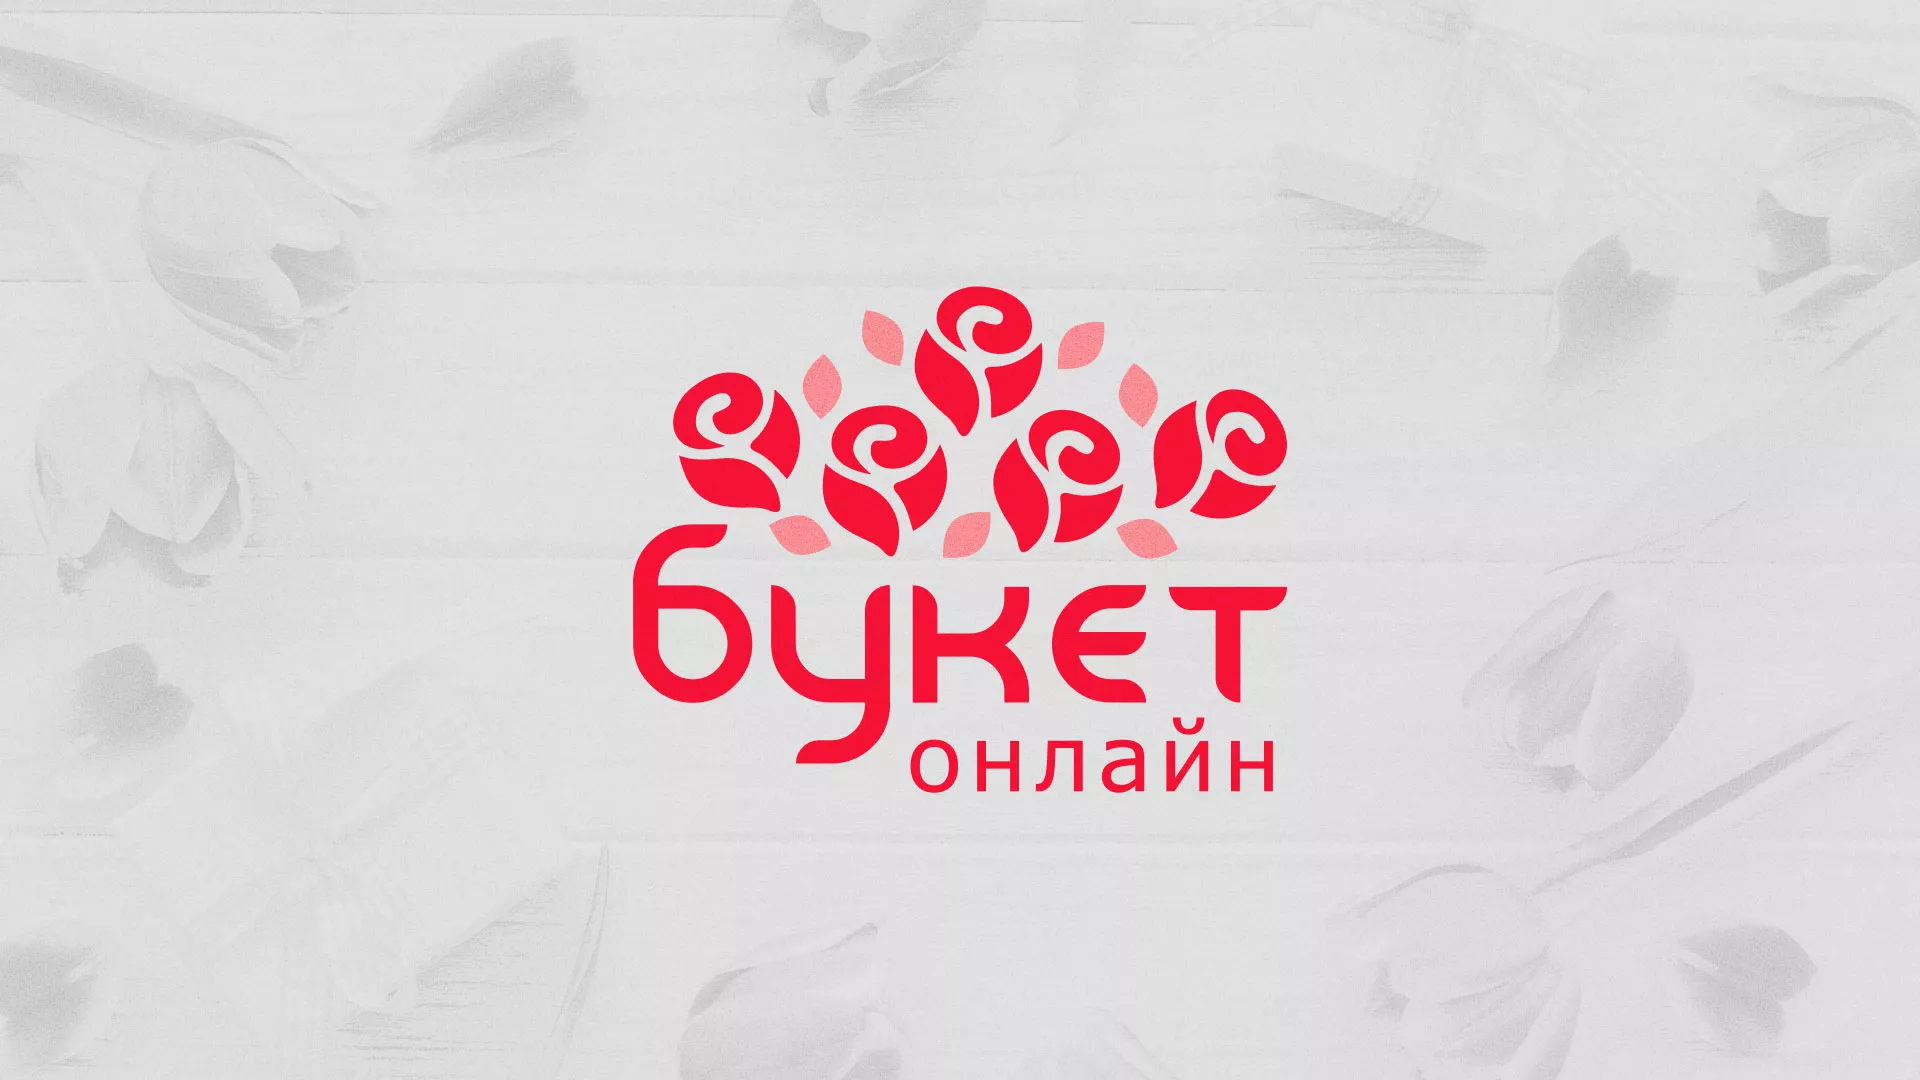 Создание интернет-магазина «Букет-онлайн» по цветам в Владимире